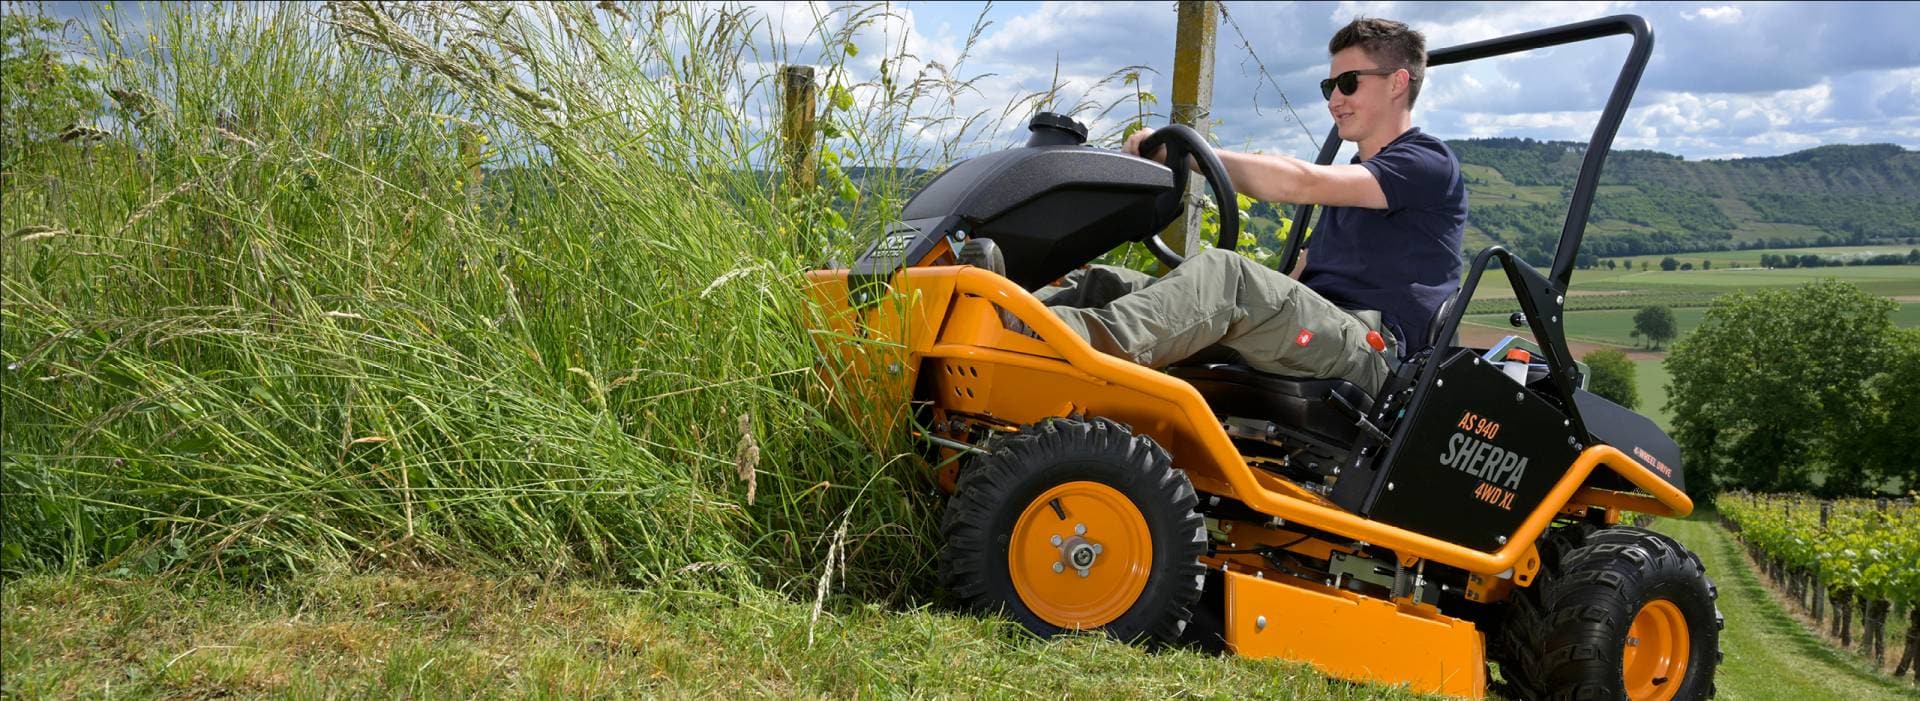 AS-Motor Aufsitzmäher für Ihren Einsatz in hohem Gras an steilen